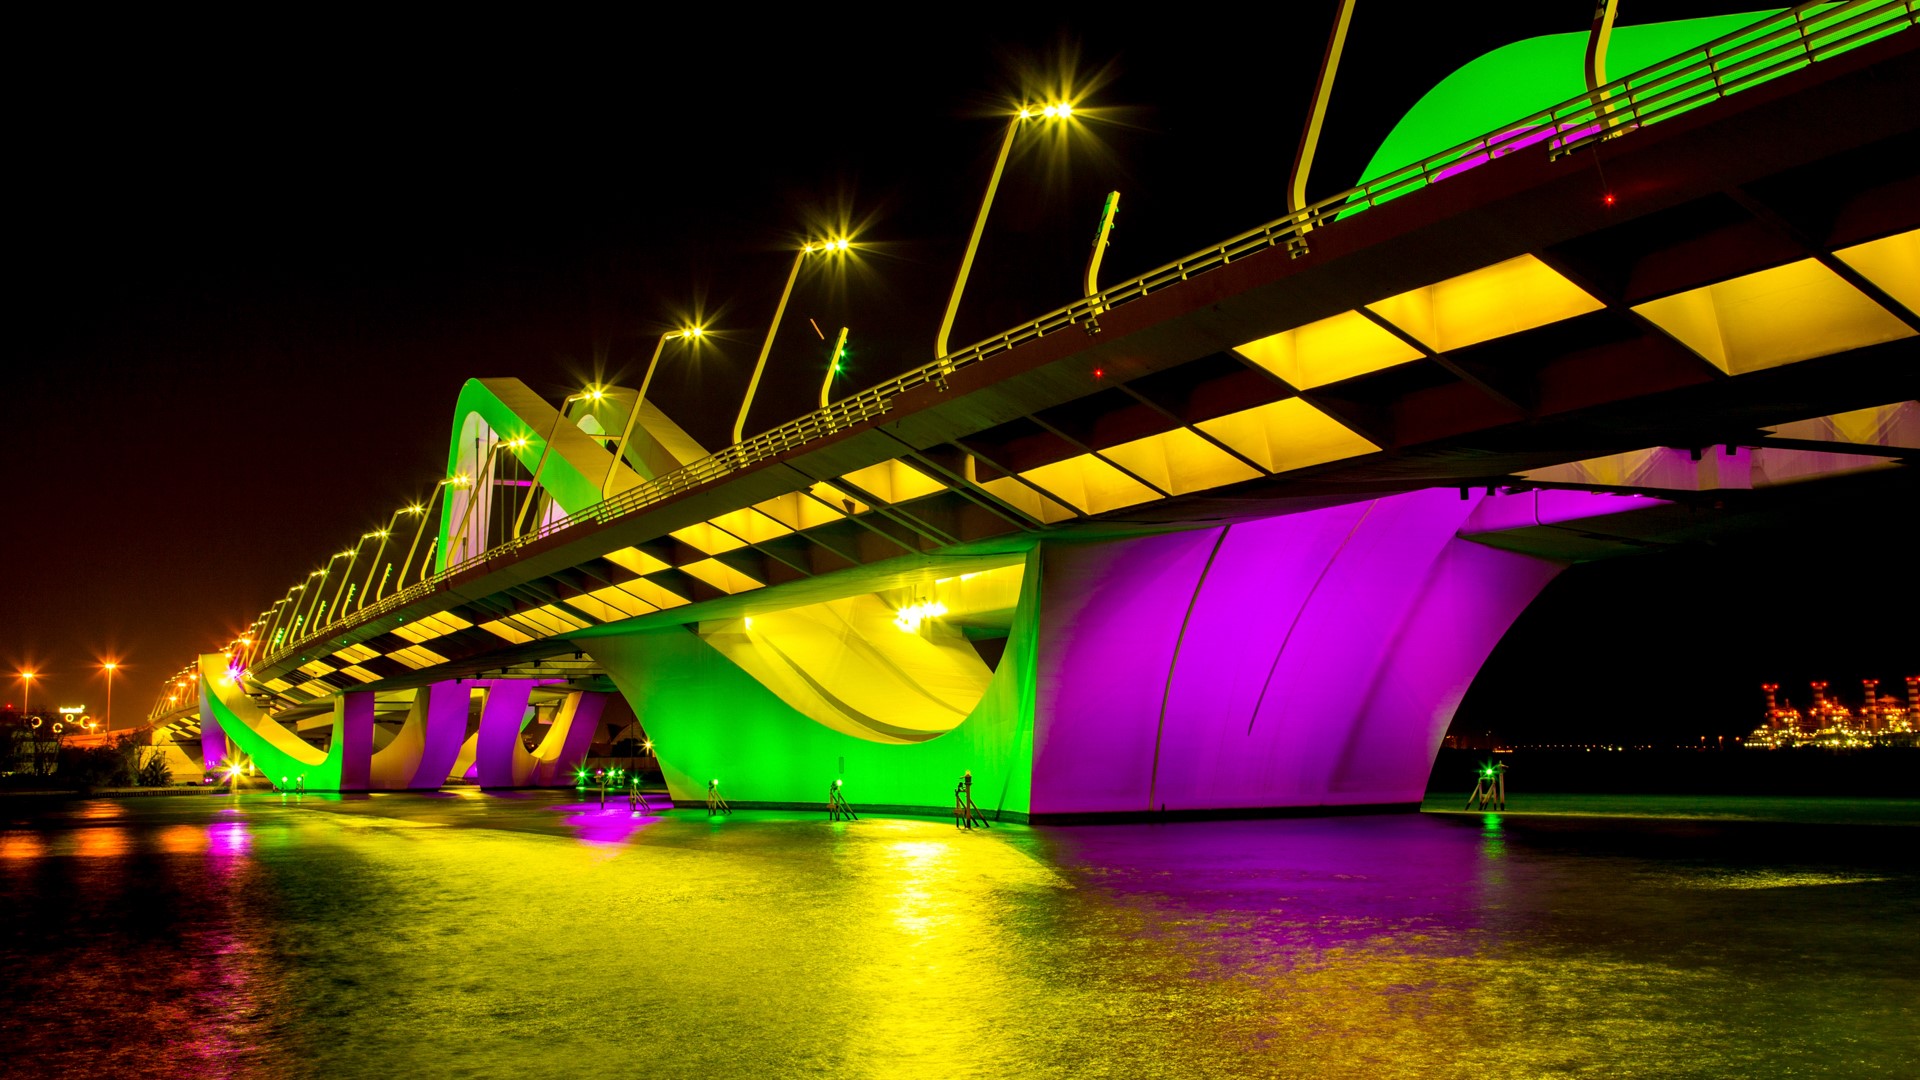 Glowing Sheikh Zayed Bridge, Abu Dhabi, UAE | Windows Spotlight Images